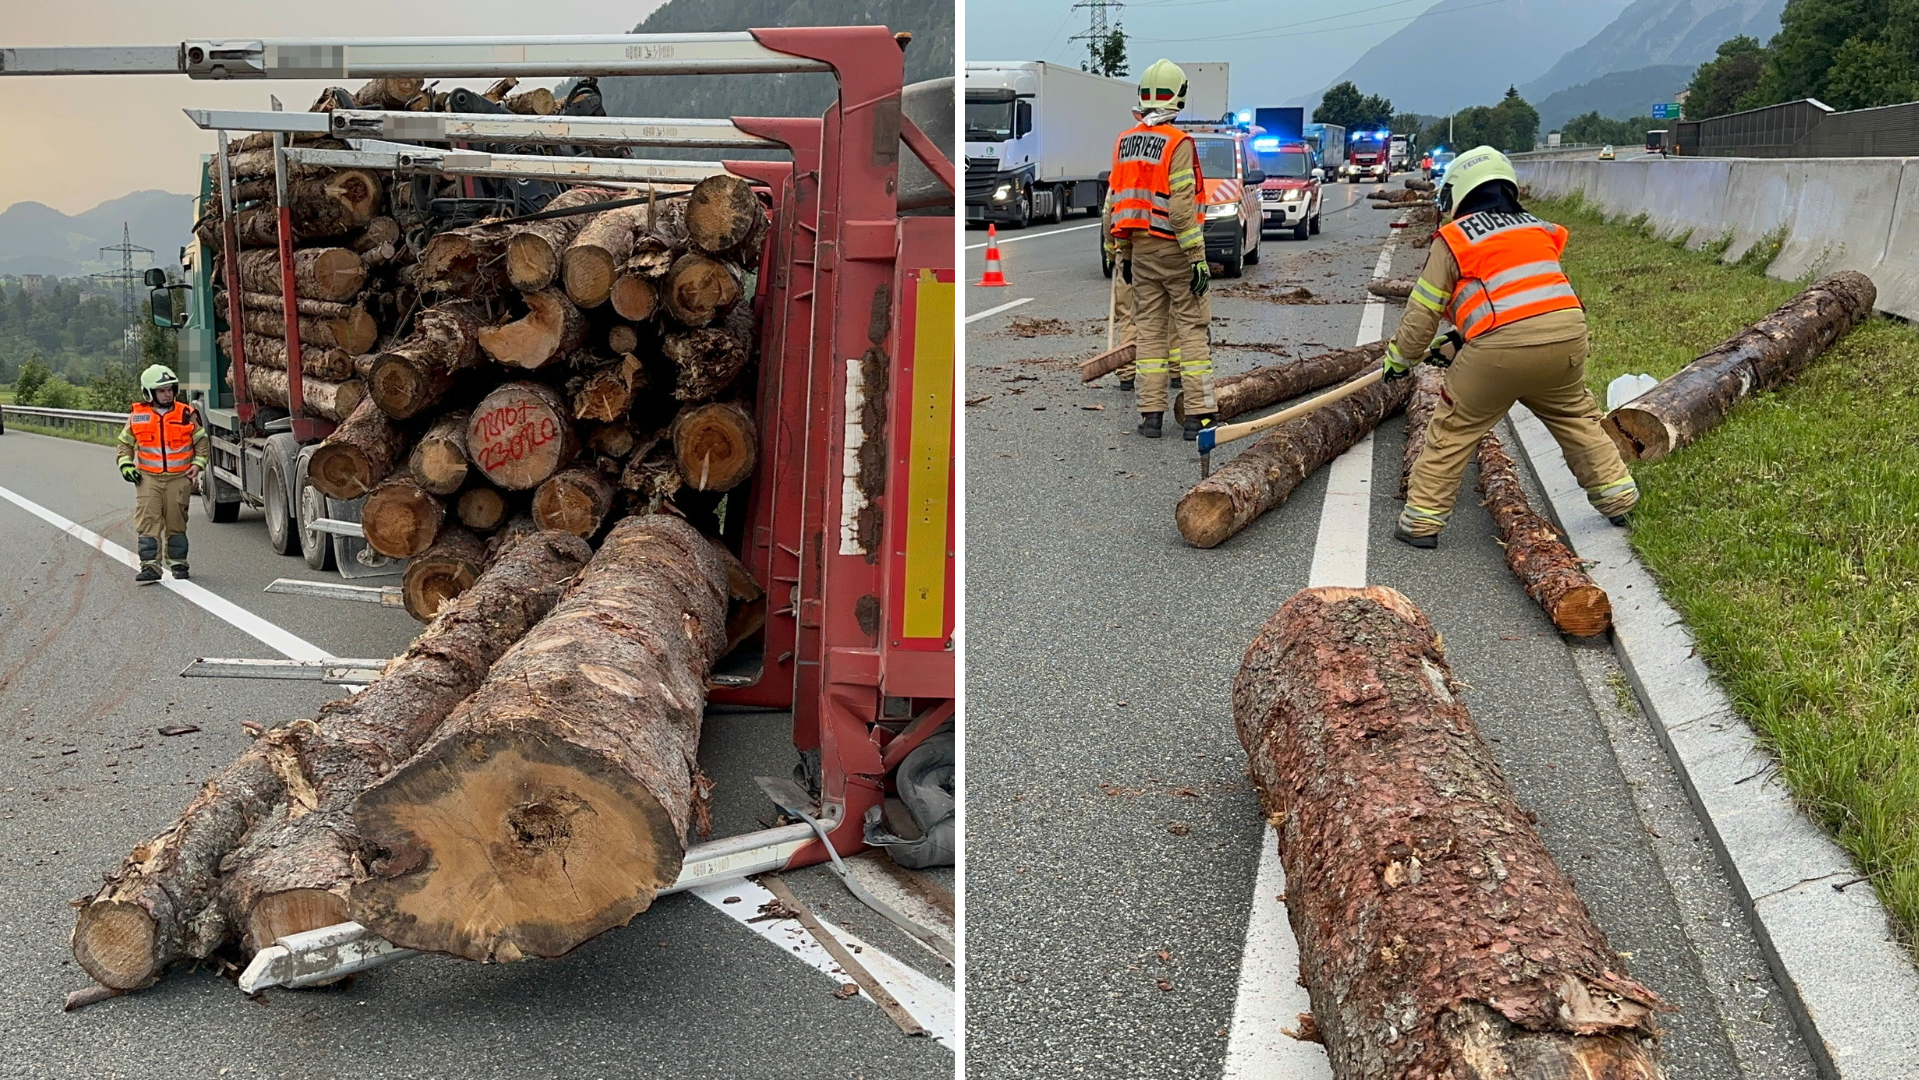 Çok sayıda ağaç gövdesi A12 otoyoluna saçıldı. İtfaiye ve Asfinag yardım etmek zorunda kaldı. (Bild: ZOOM Tirol)